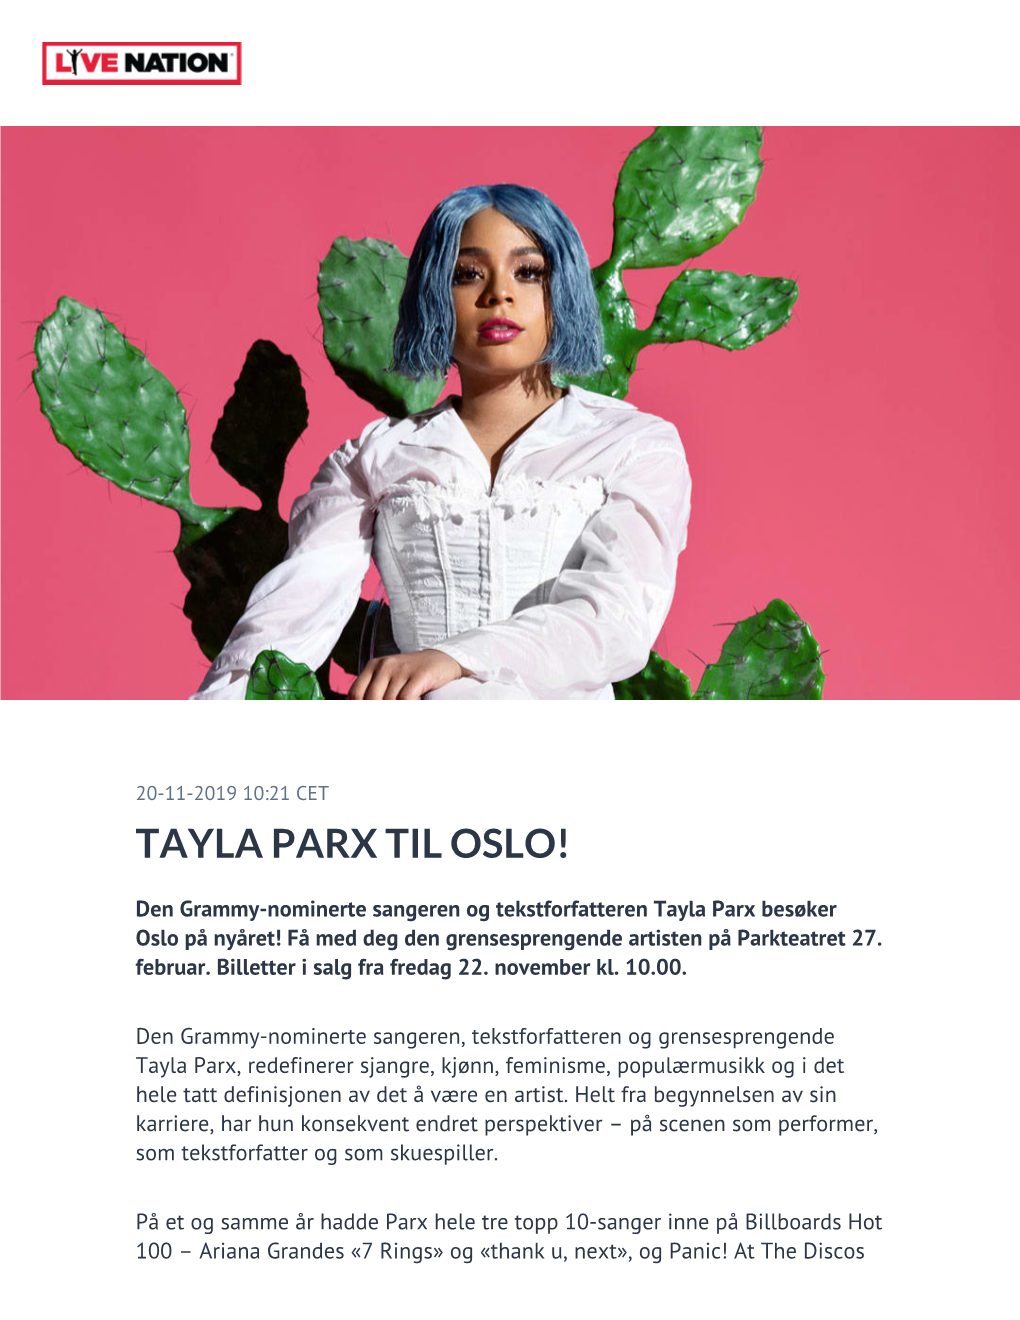 Tayla Parx Til Oslo!